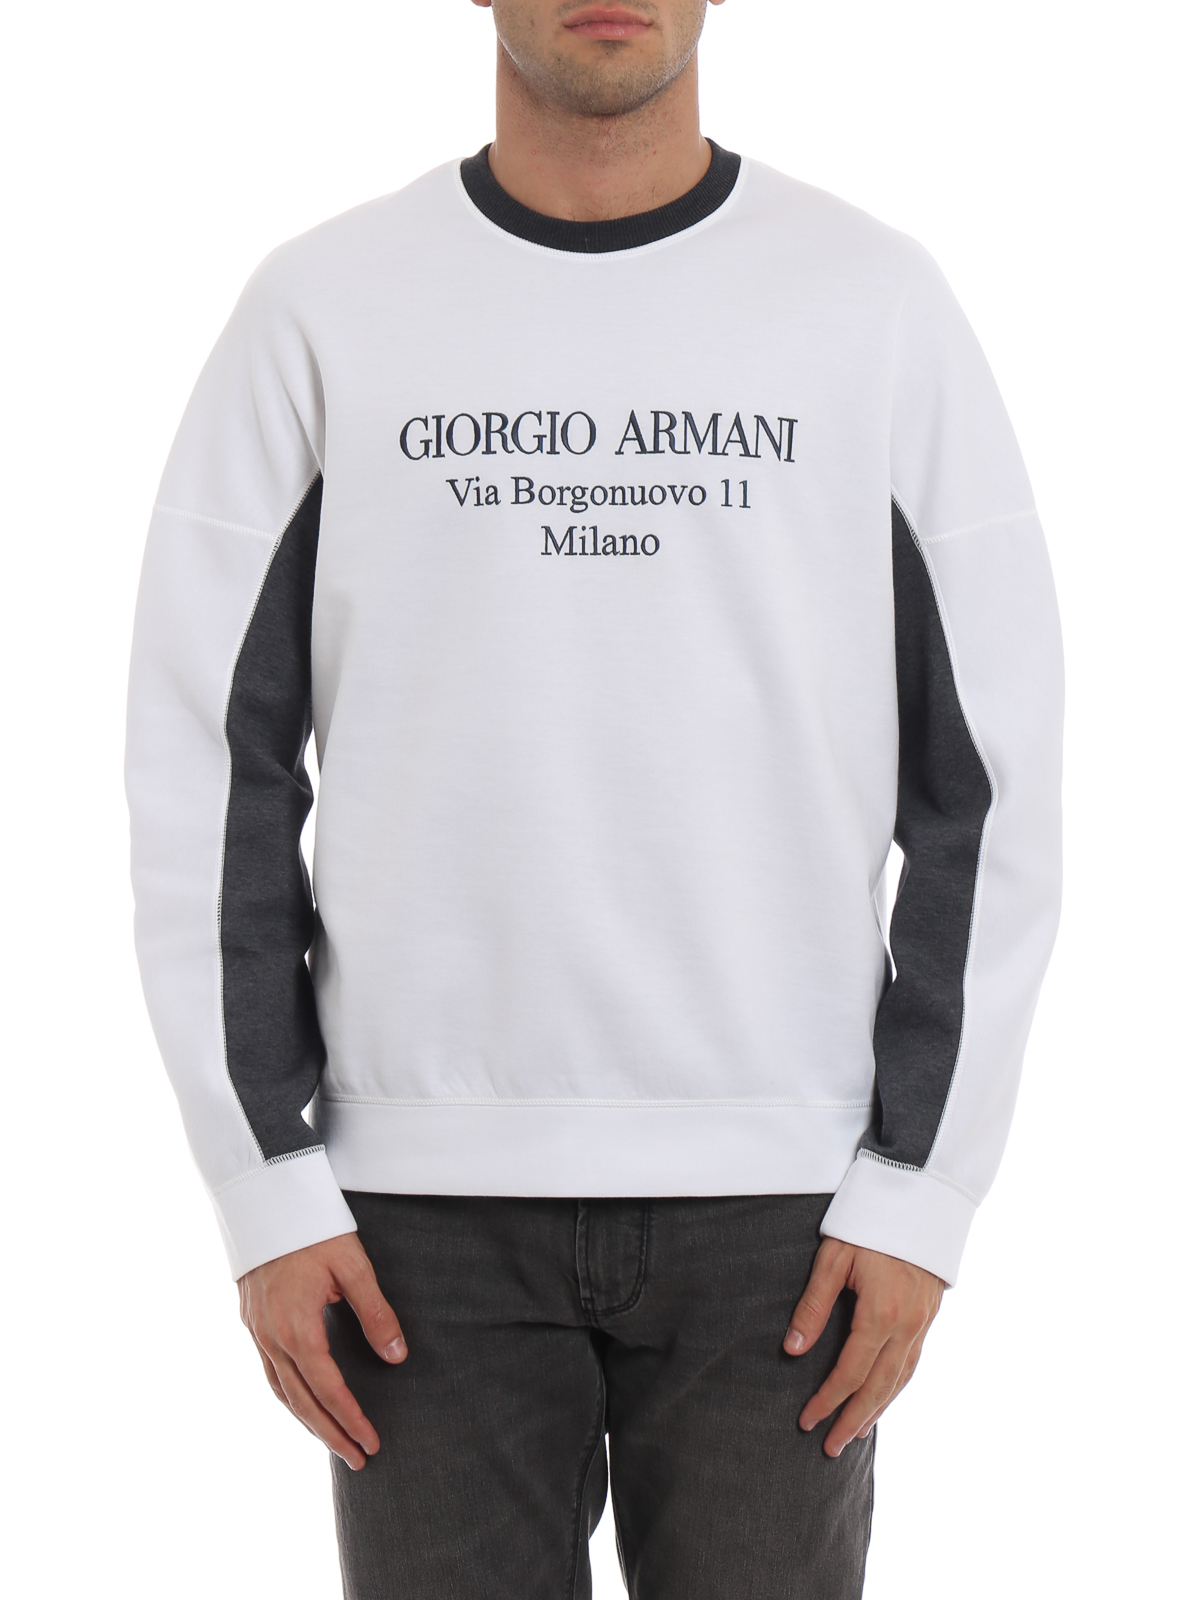 giorgio armani sweatshirts